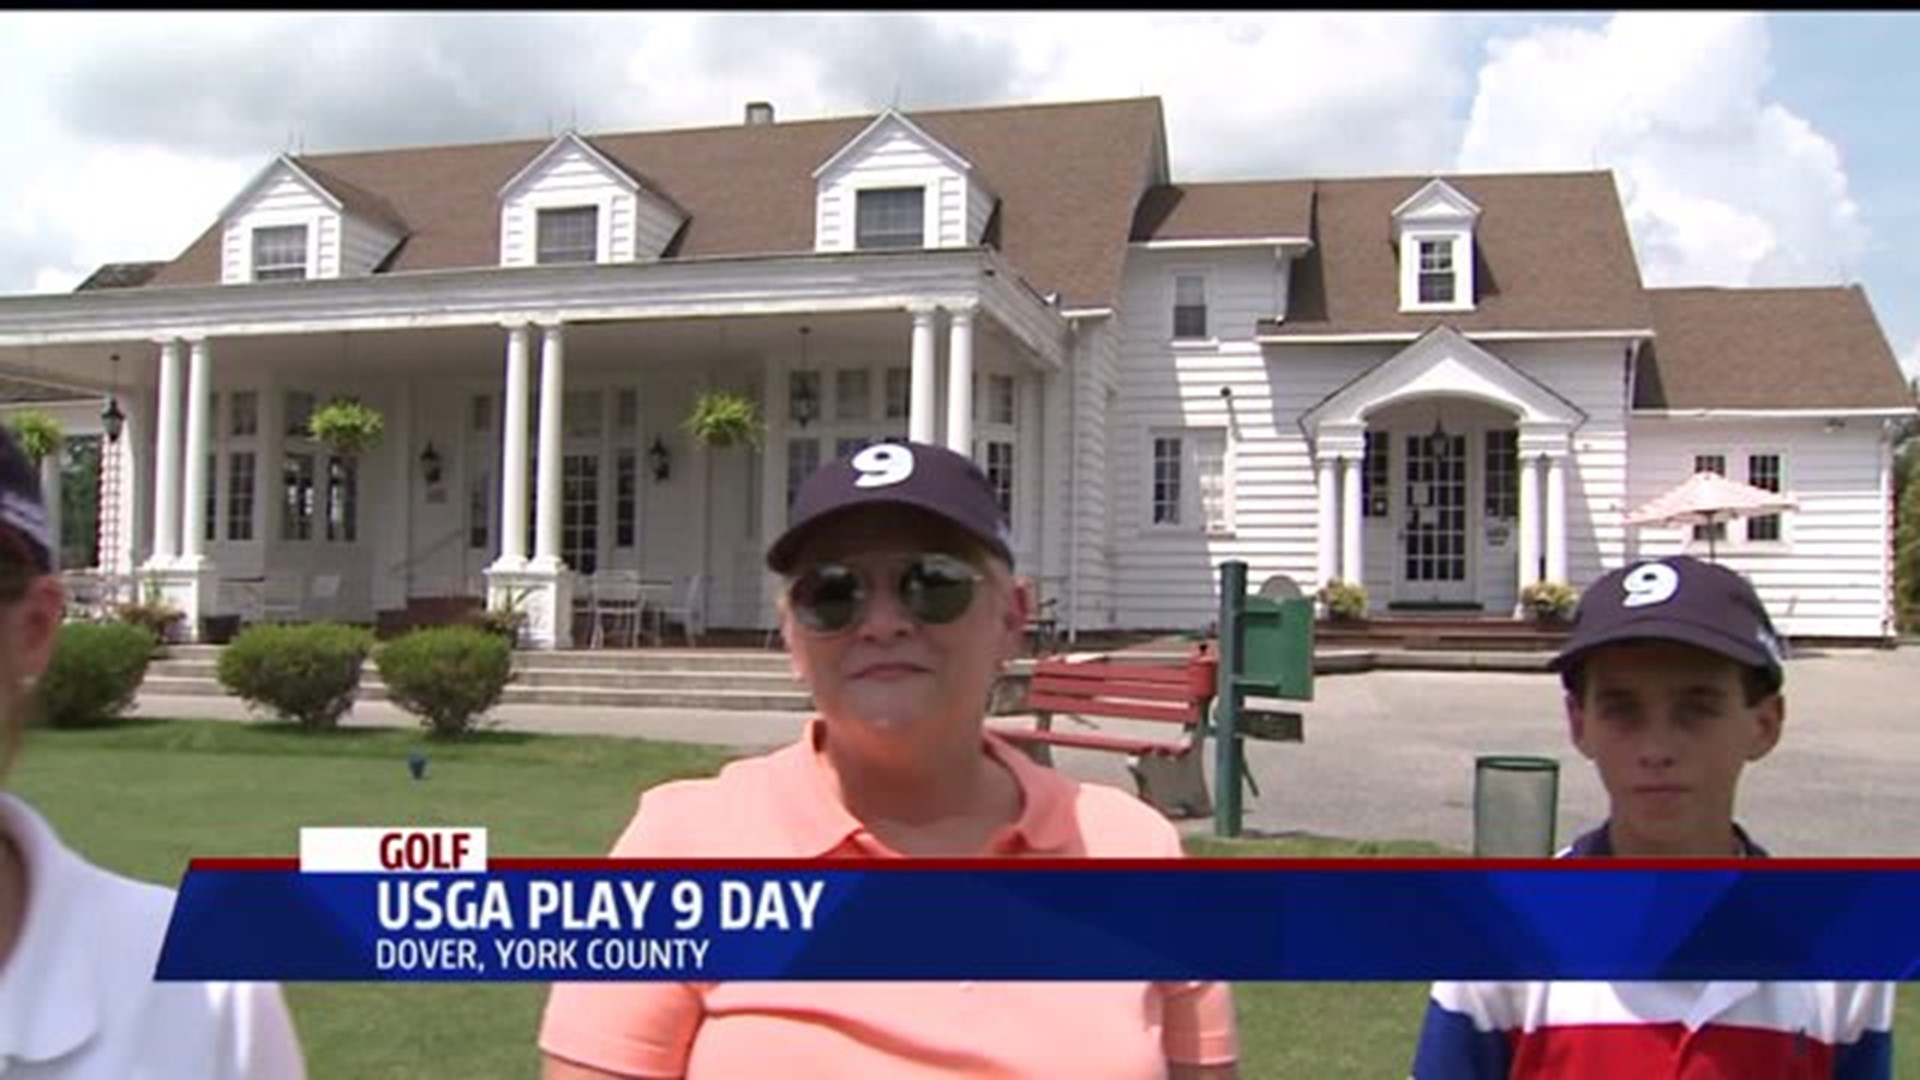 USGA Play 9 Day